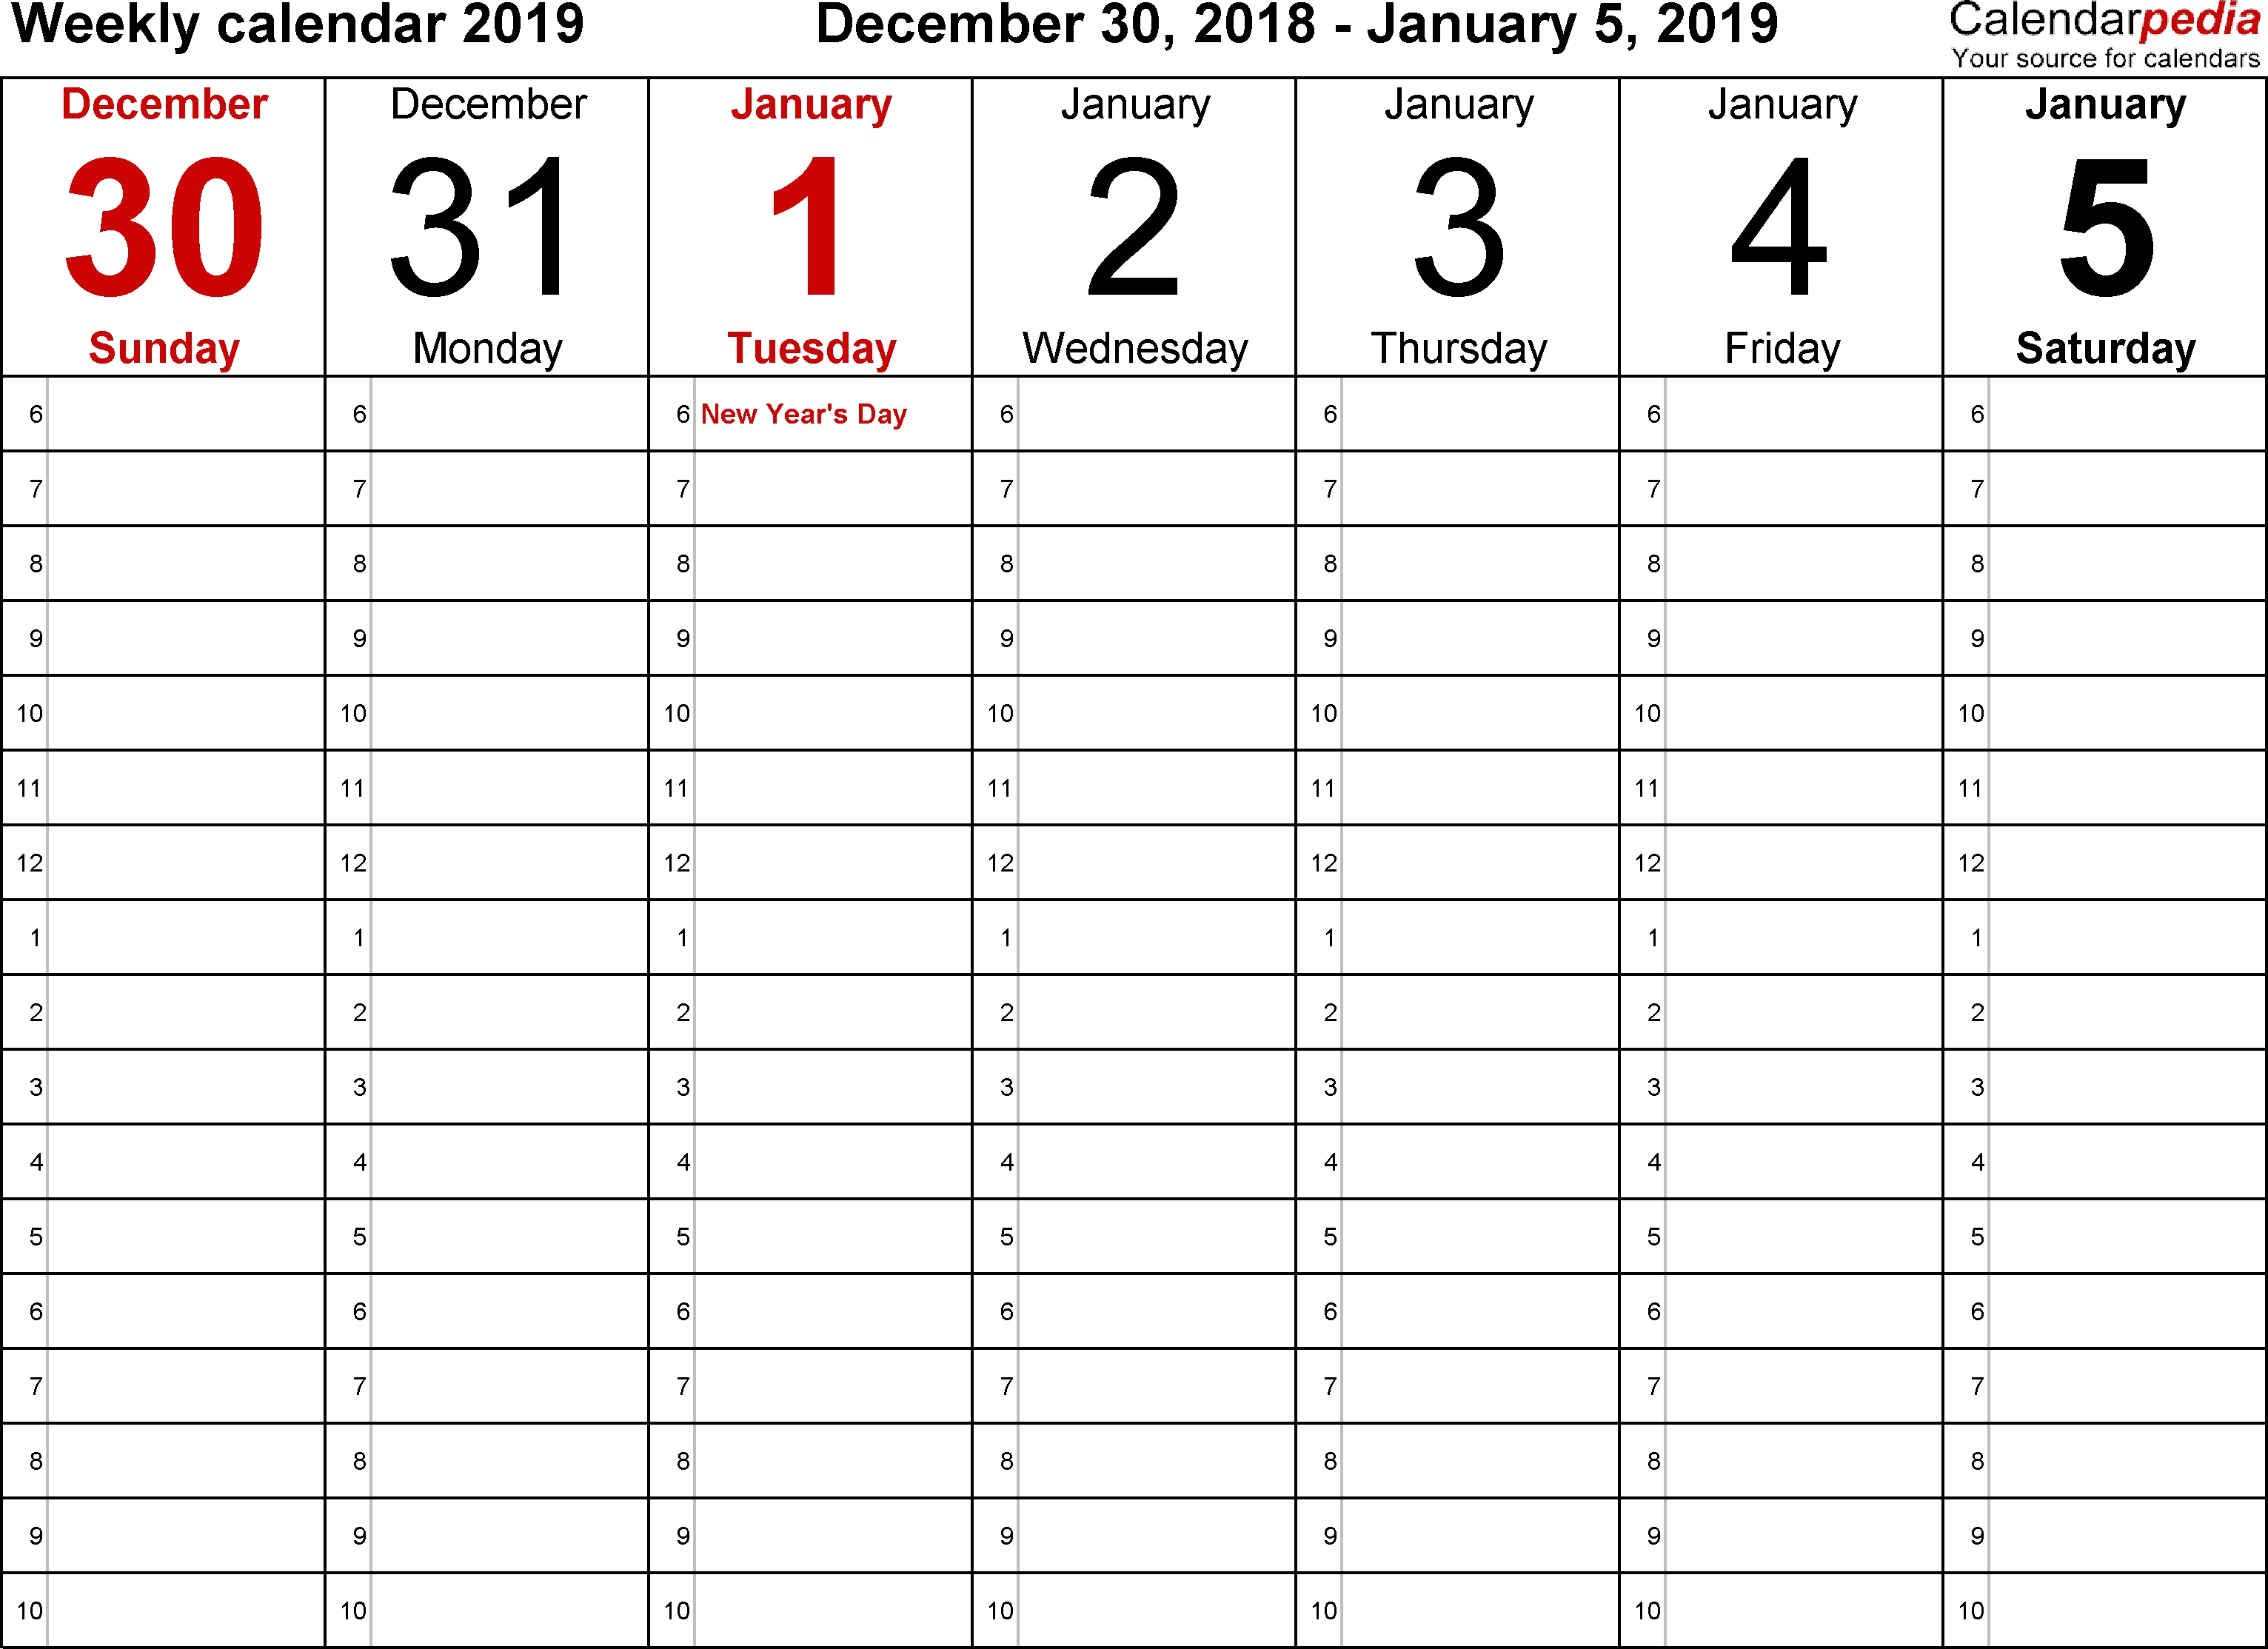 Weekly Calendar 2019 For Word - 12 Free Printable Templates inside Printable Weekly Calendar With Top 5 For Week